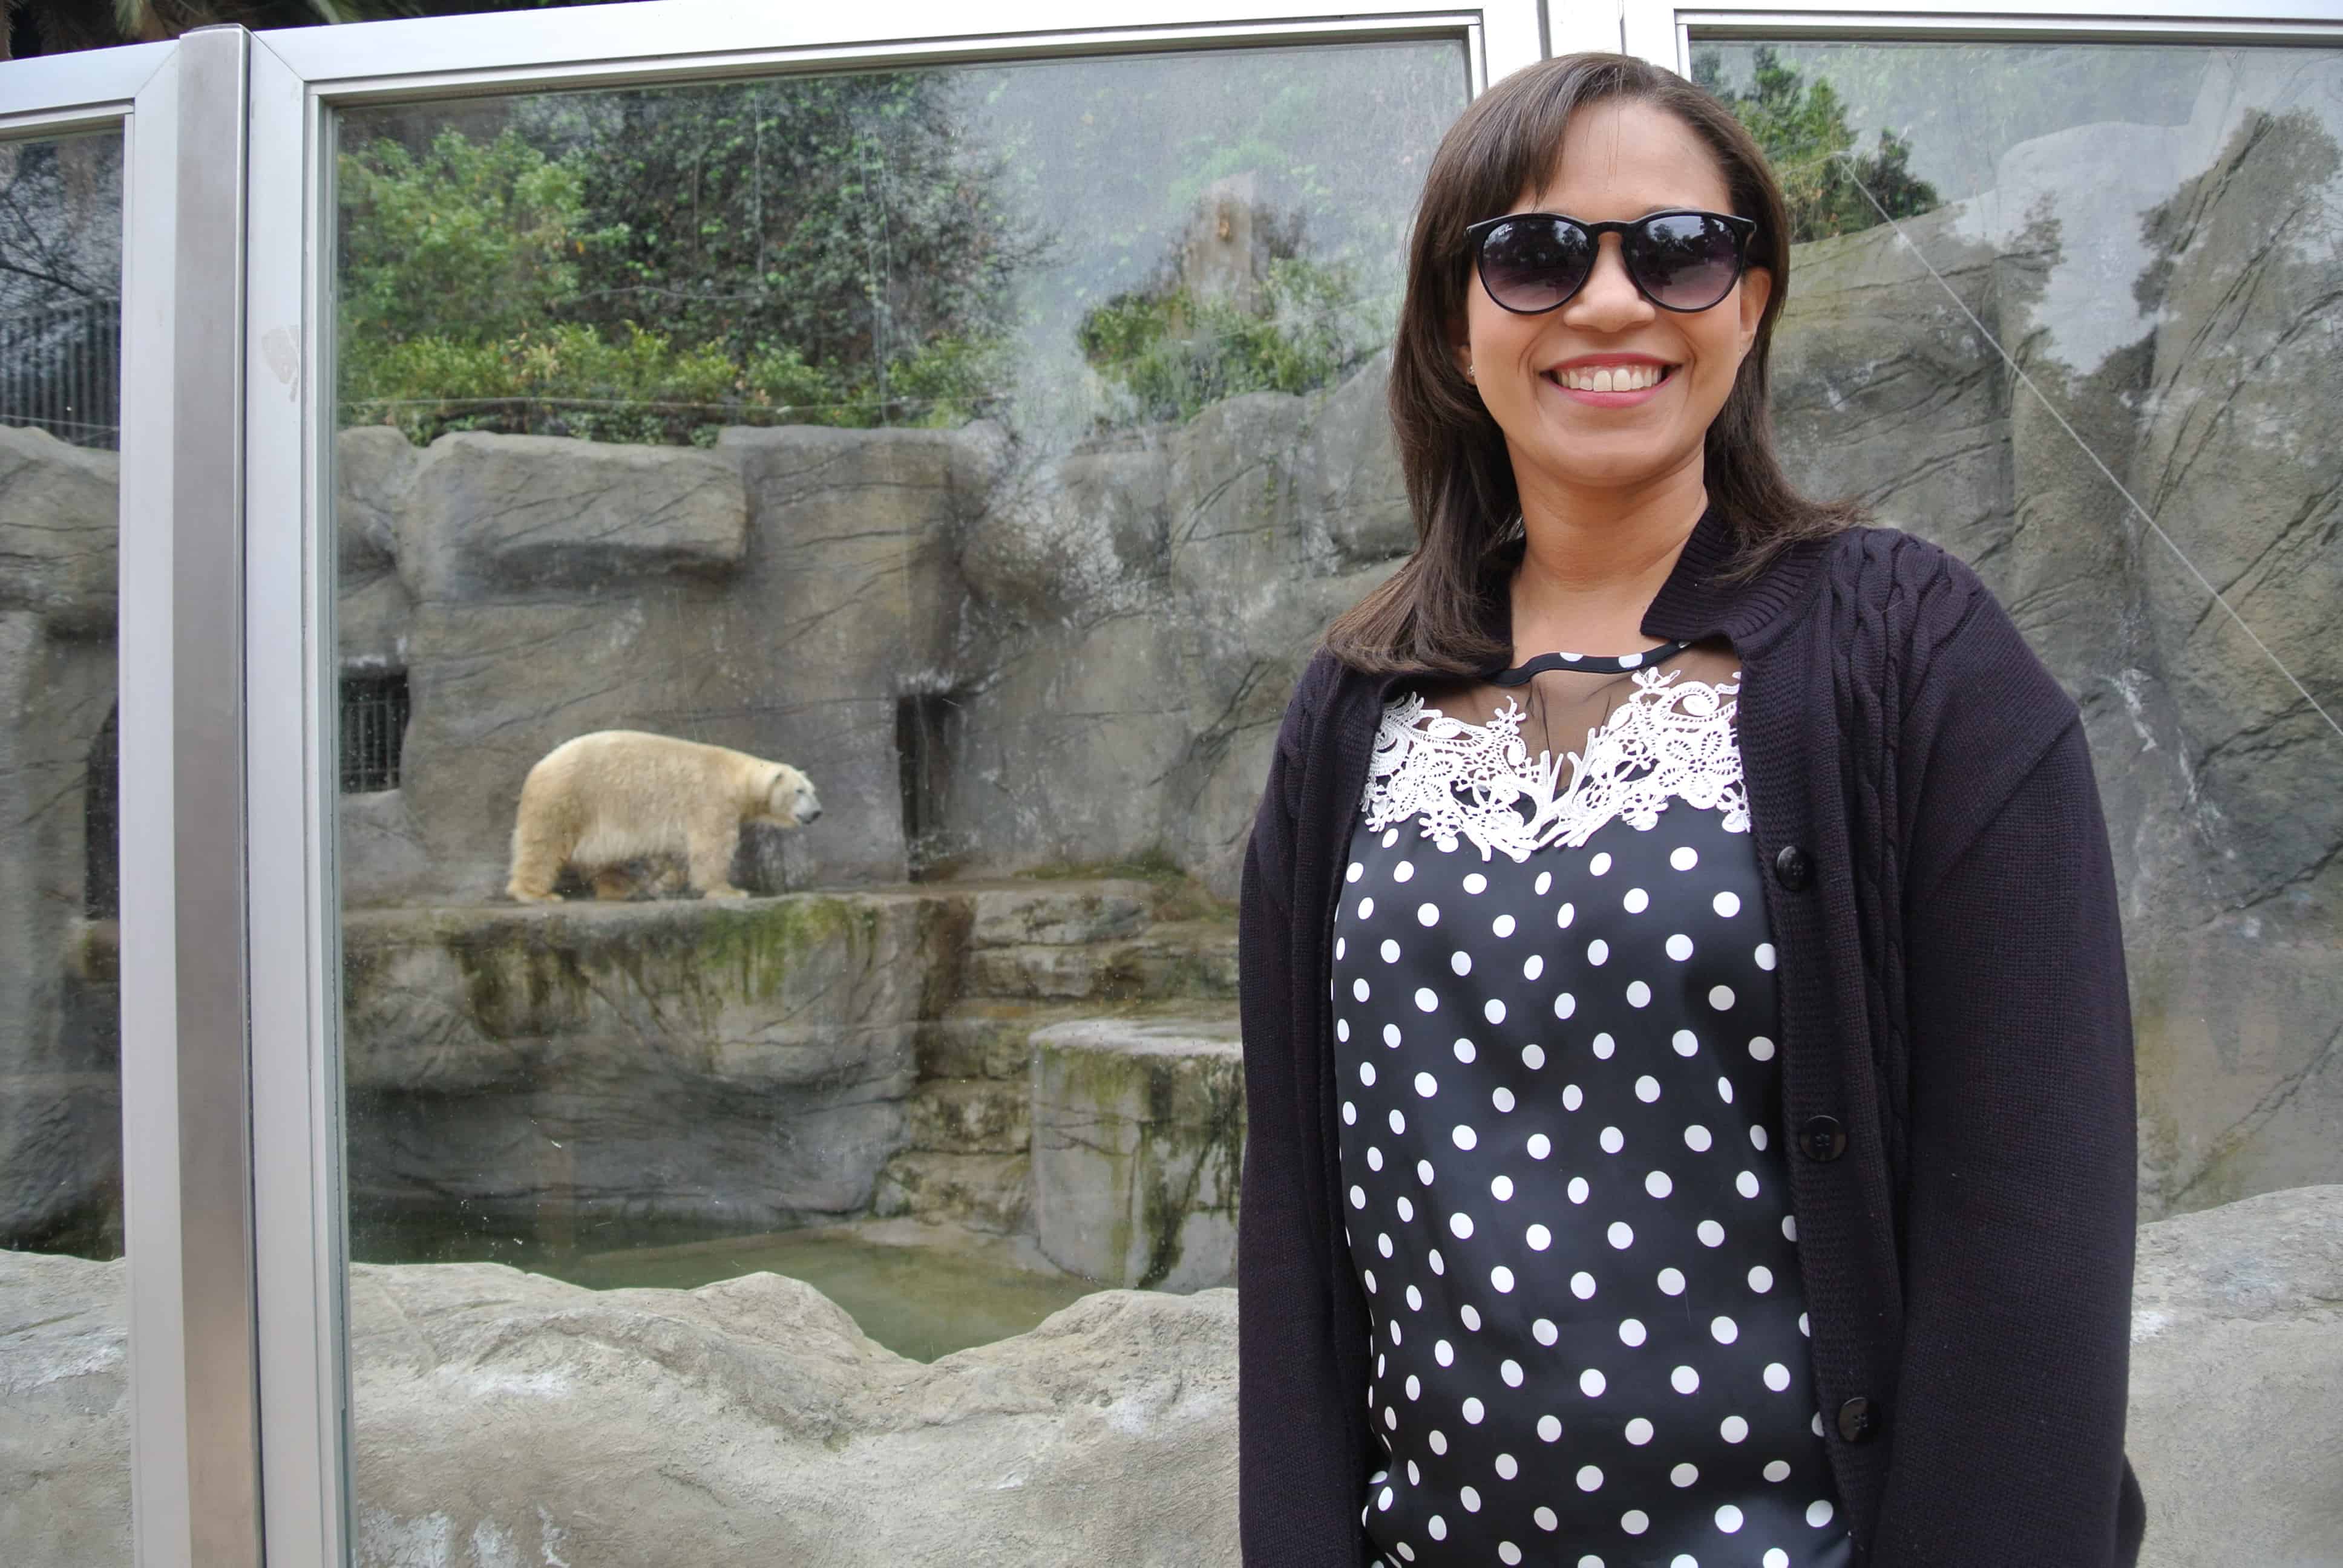 Zoológico de Santiago - Urso Polar